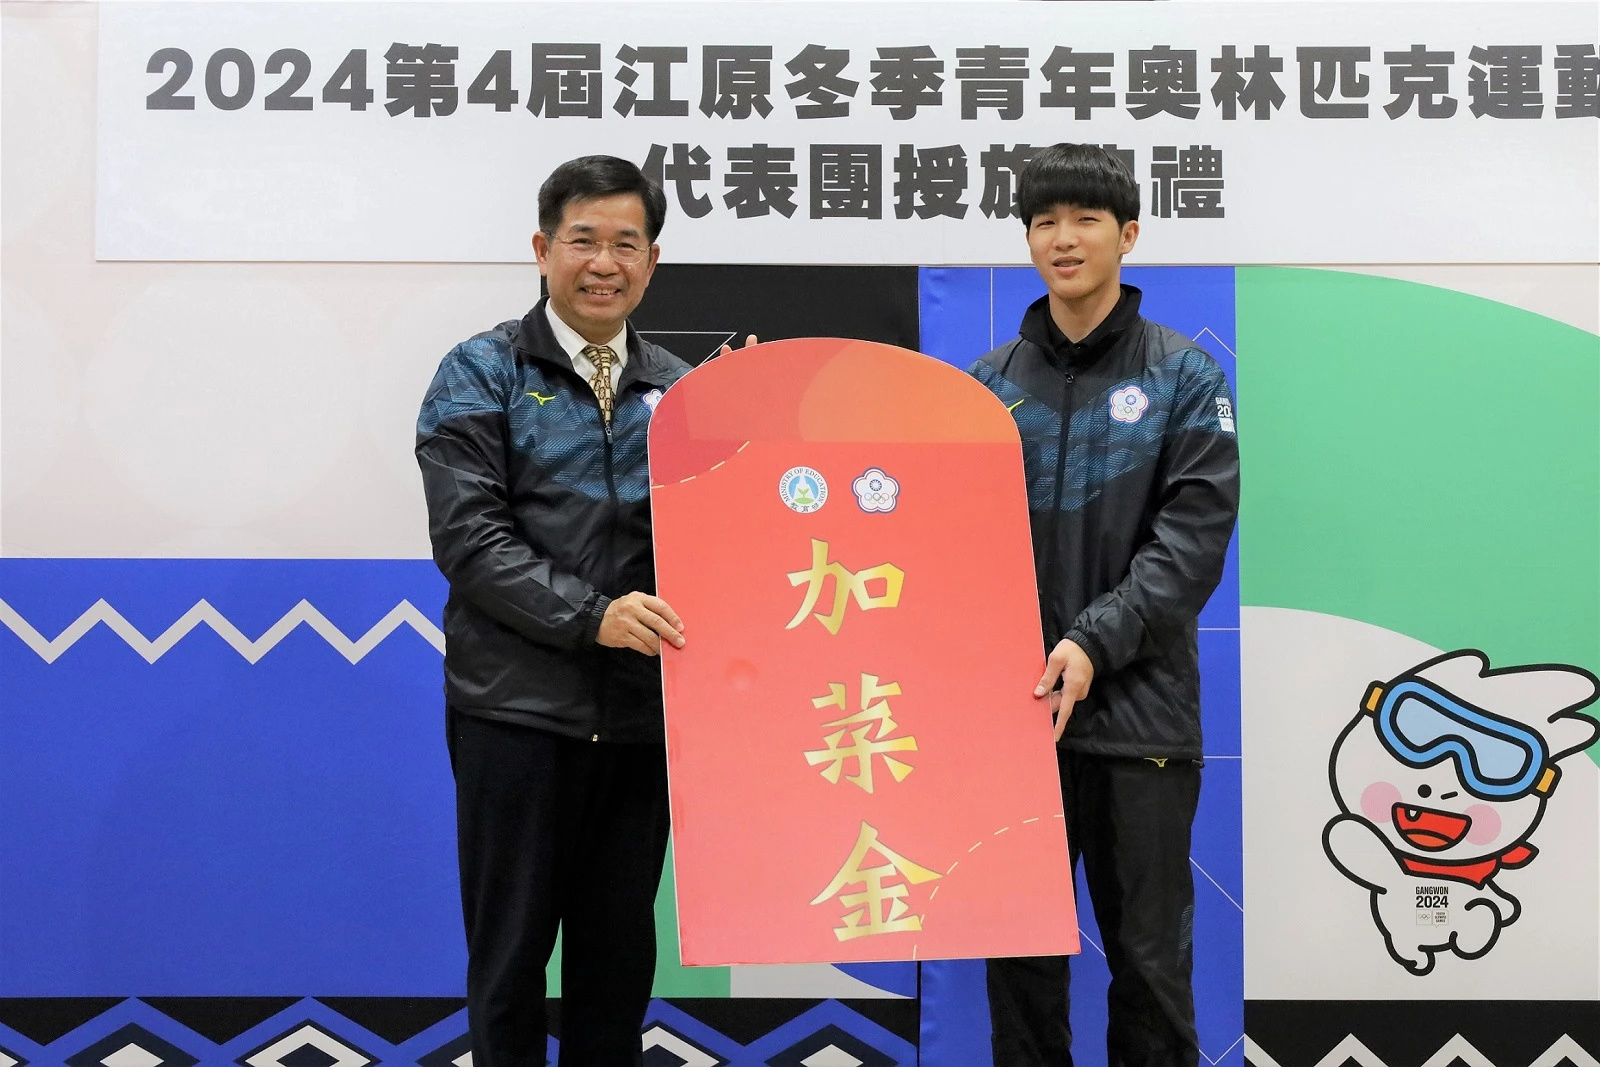 教育部潘文忠部長(左)致贈2024江原冬季青年奧運會代表團加菜金，由冰球選手吳凱振(右)代表接受。